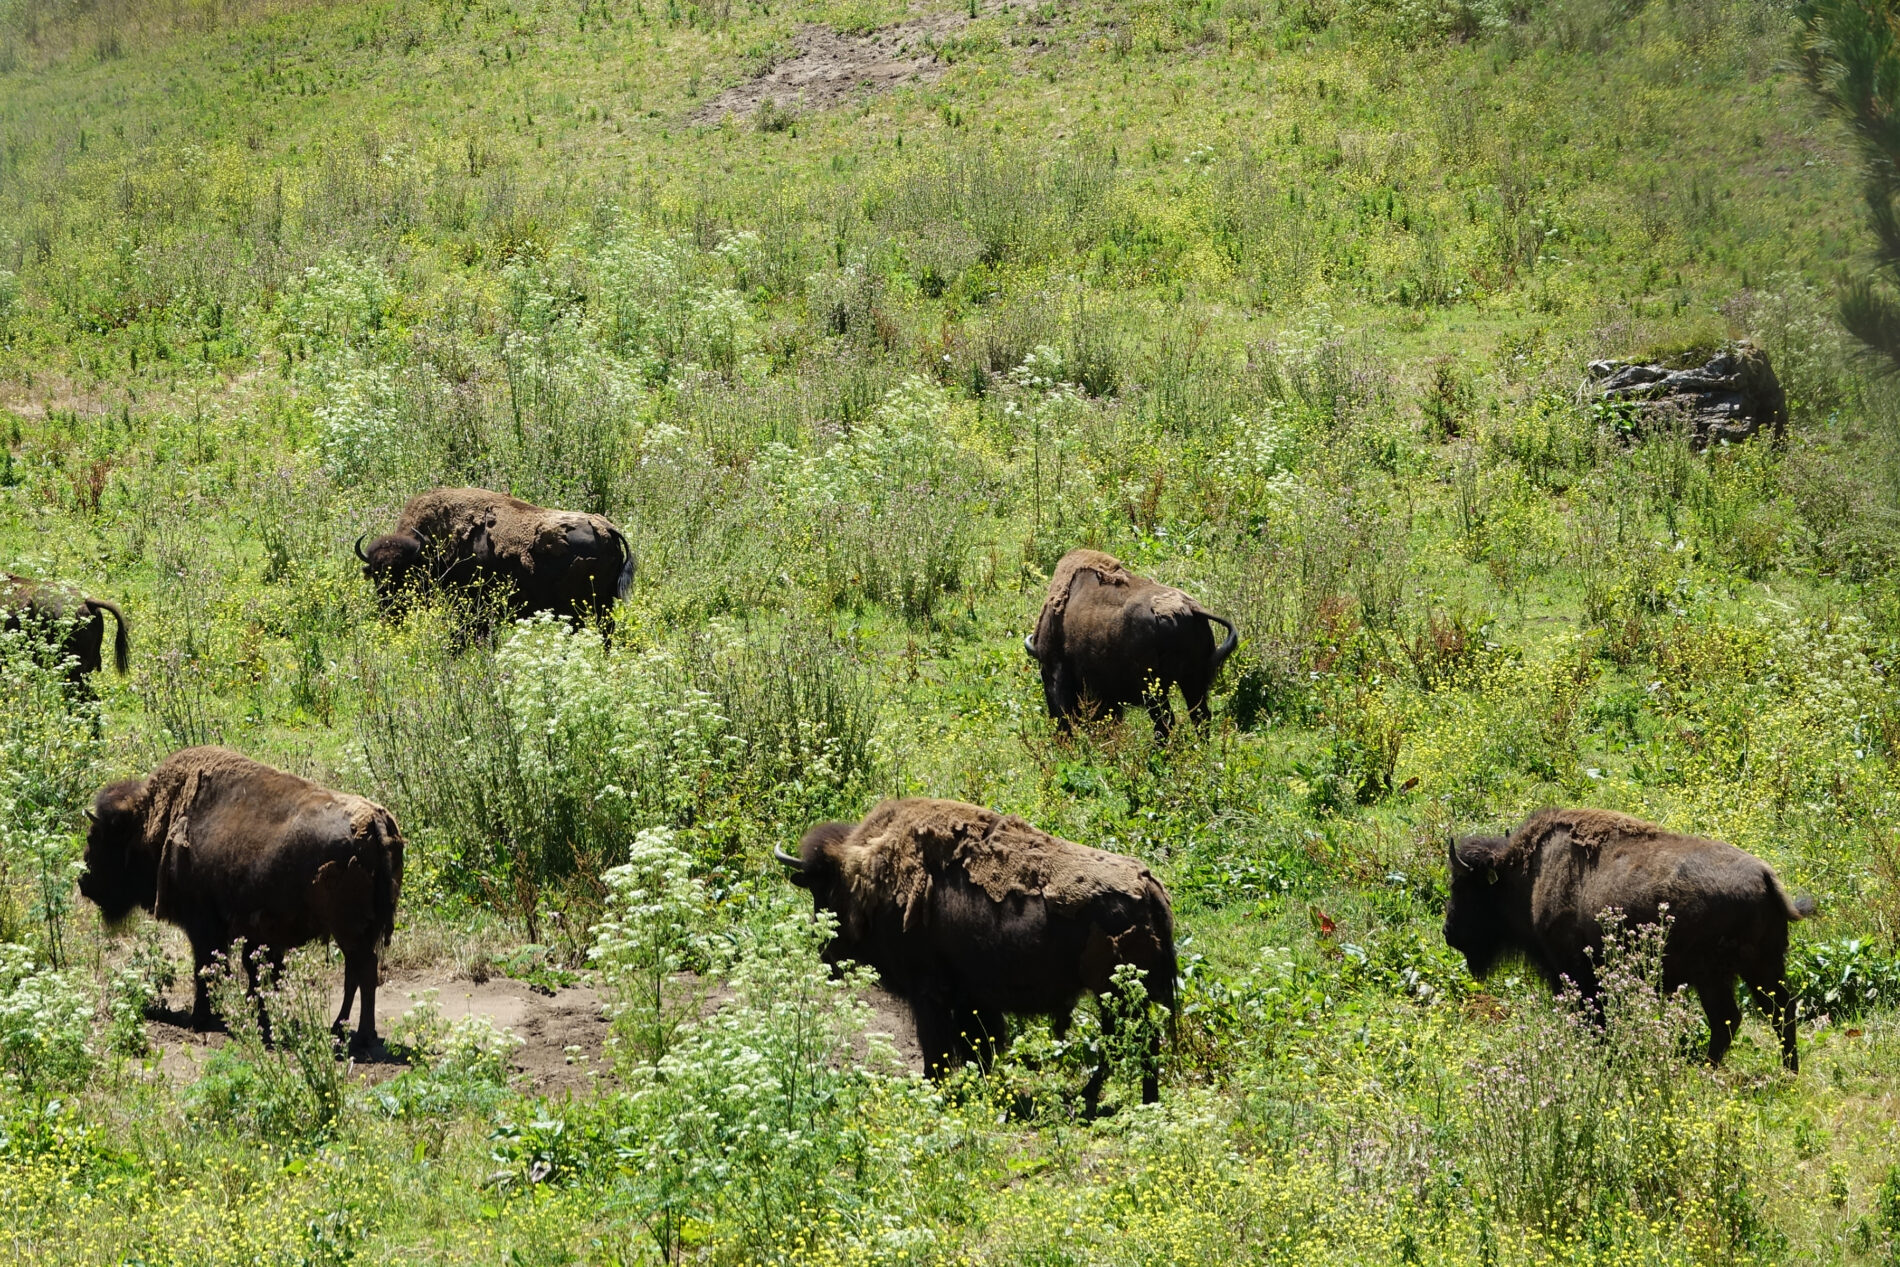 Herd of bison in Golden Gate Park.